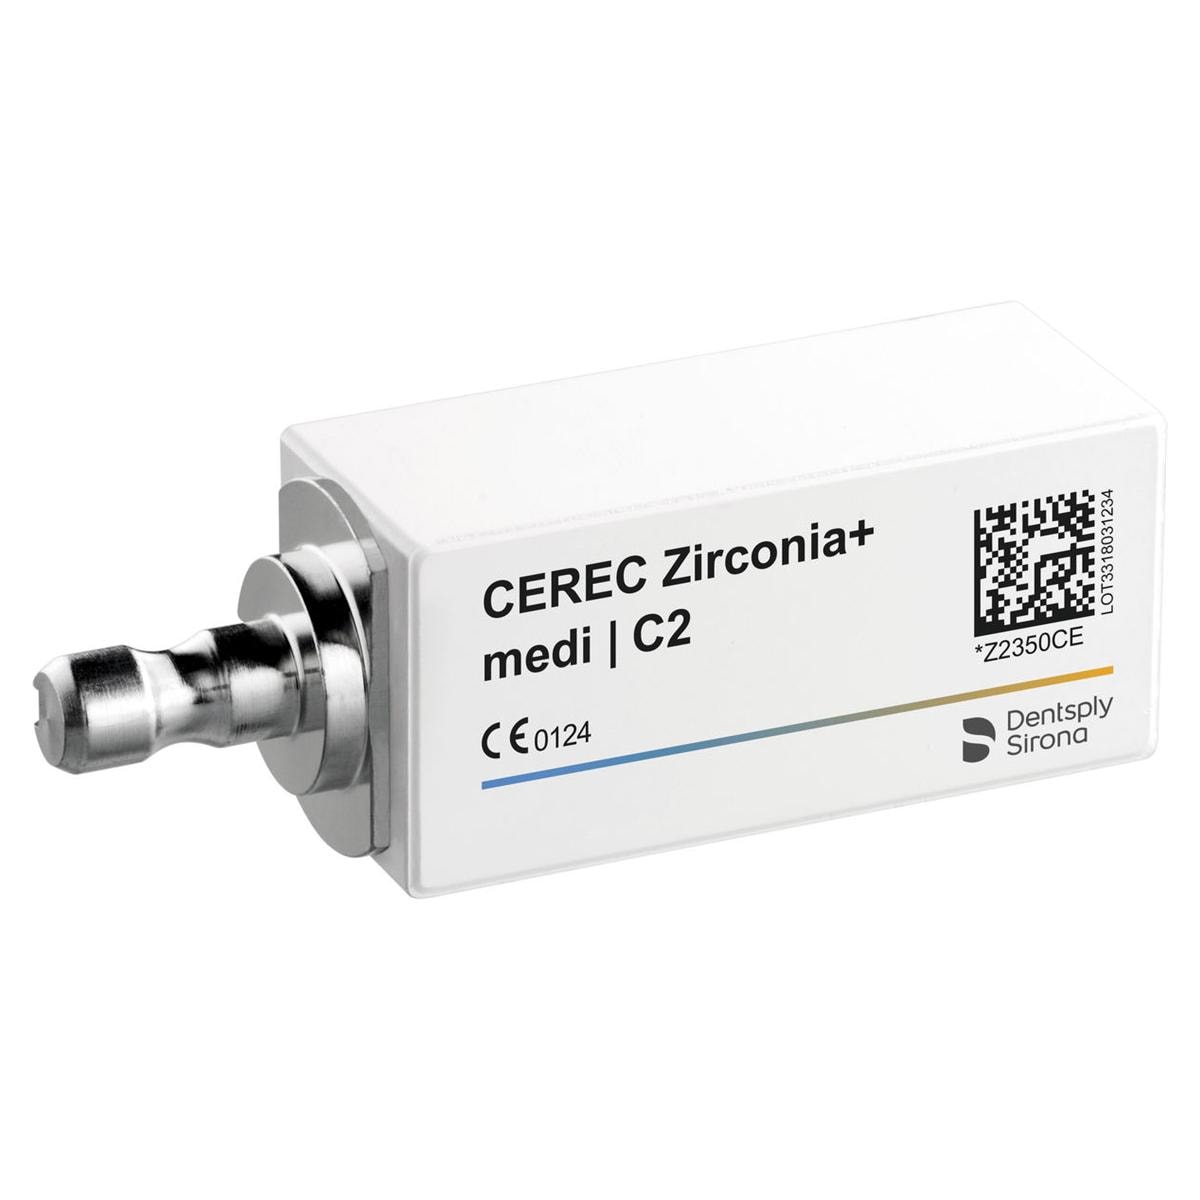 CEREC Zirconia+ medi - C2, 3 pcs